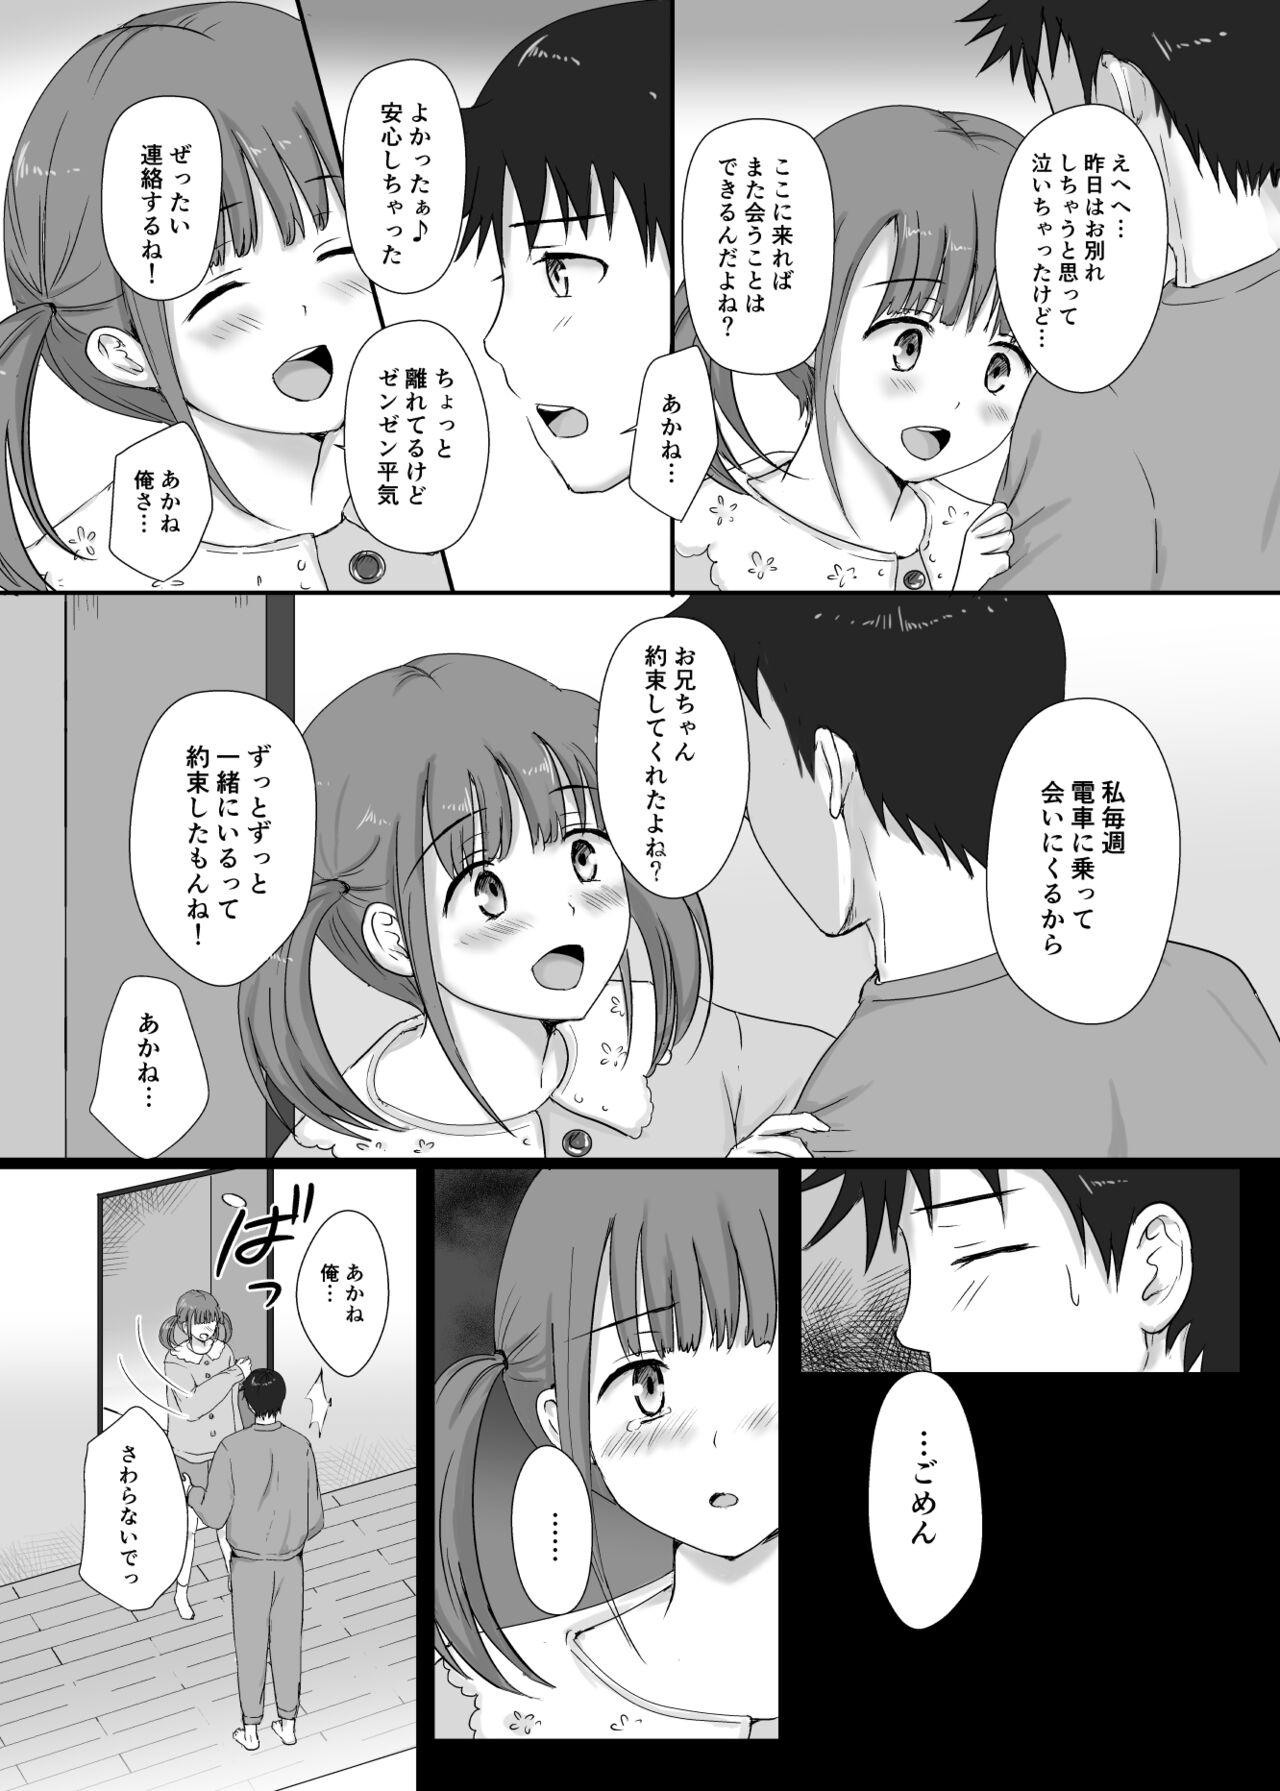 Cutie 僕と三姉妹+1 - Original Behind - Page 9